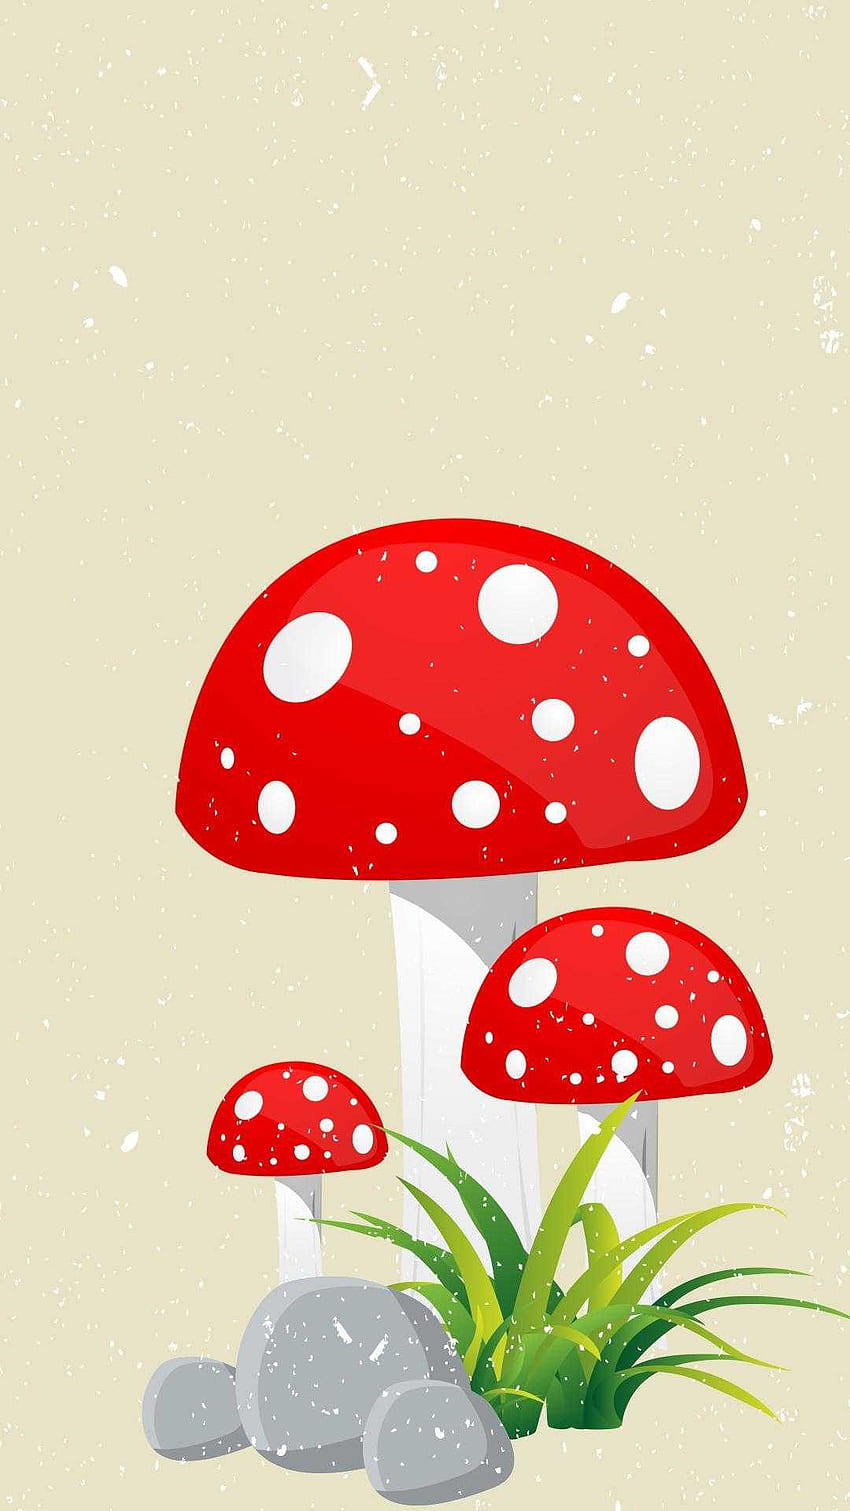 Aesthetic mushrooms HD wallpaper